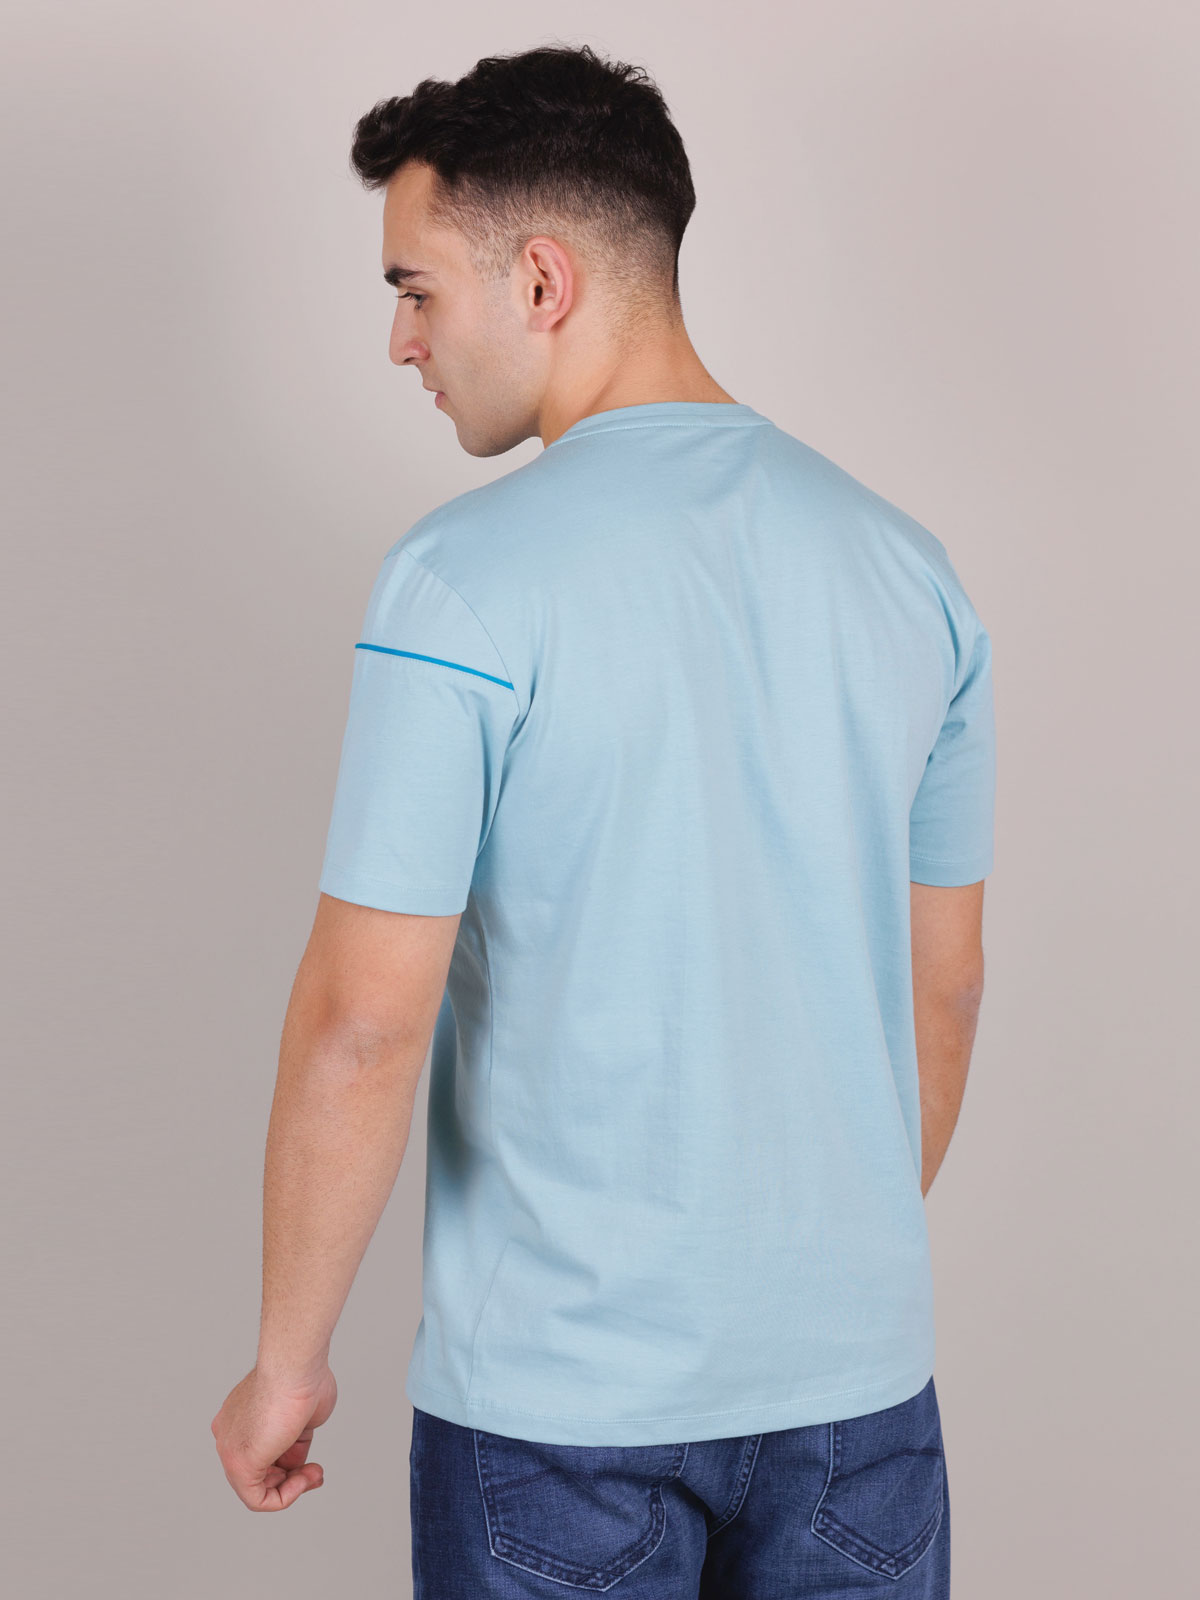 Μπλουζάκι σε γαλάζιο χρώμα με λογότυπο - 96454 € 21.93 img2